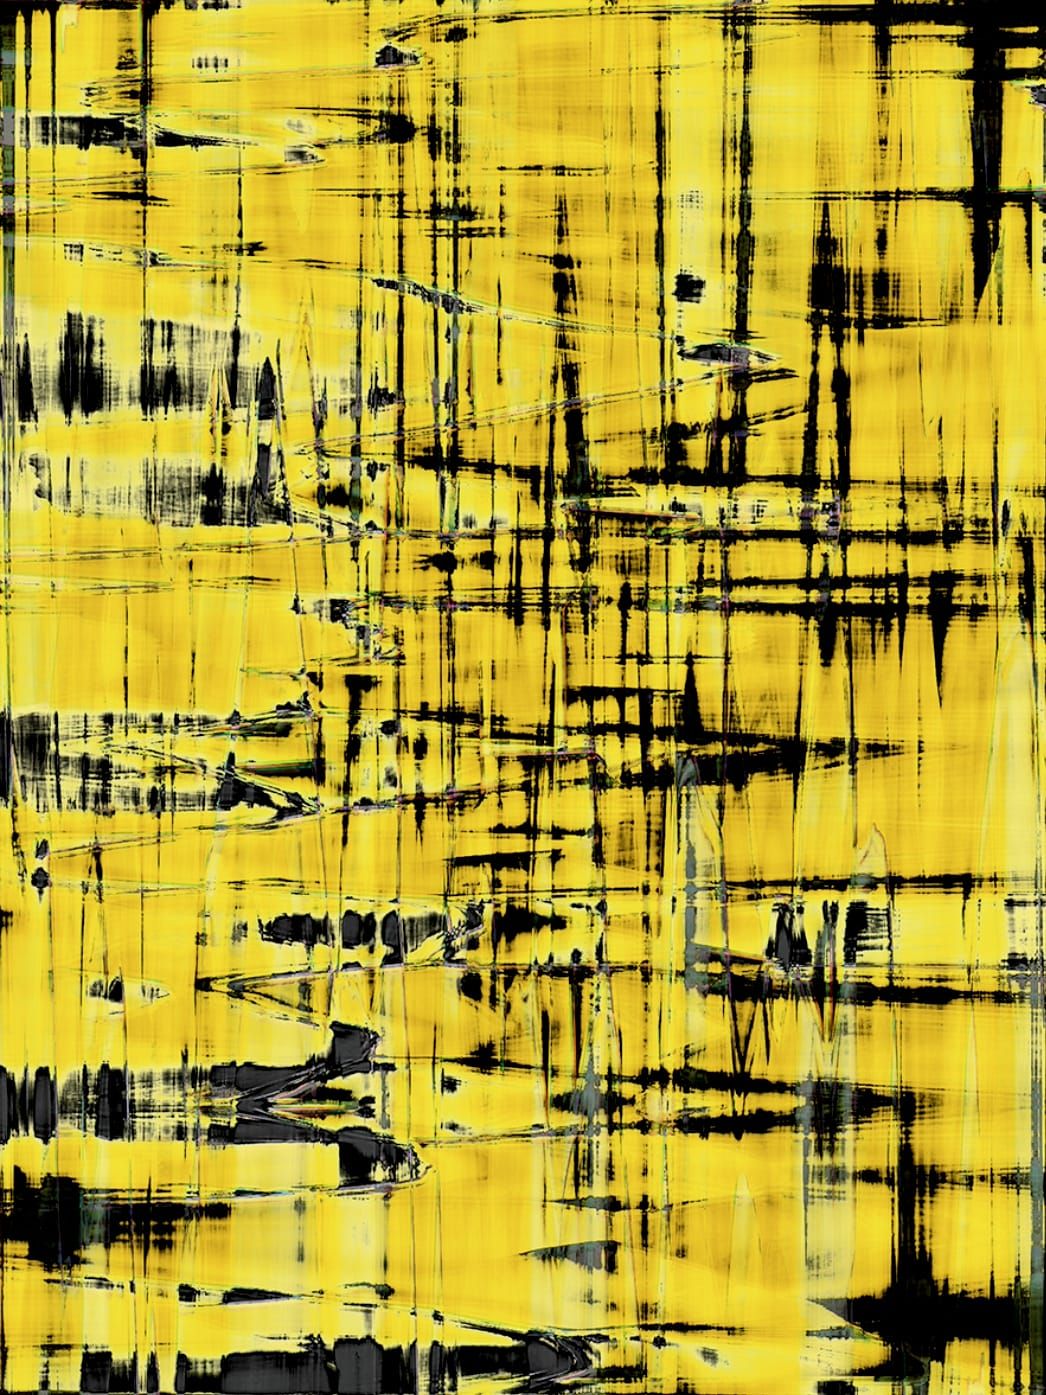 Fotografia, scanografia di Michael Monney alias acylmx, Immagine astratta in giallo e nero